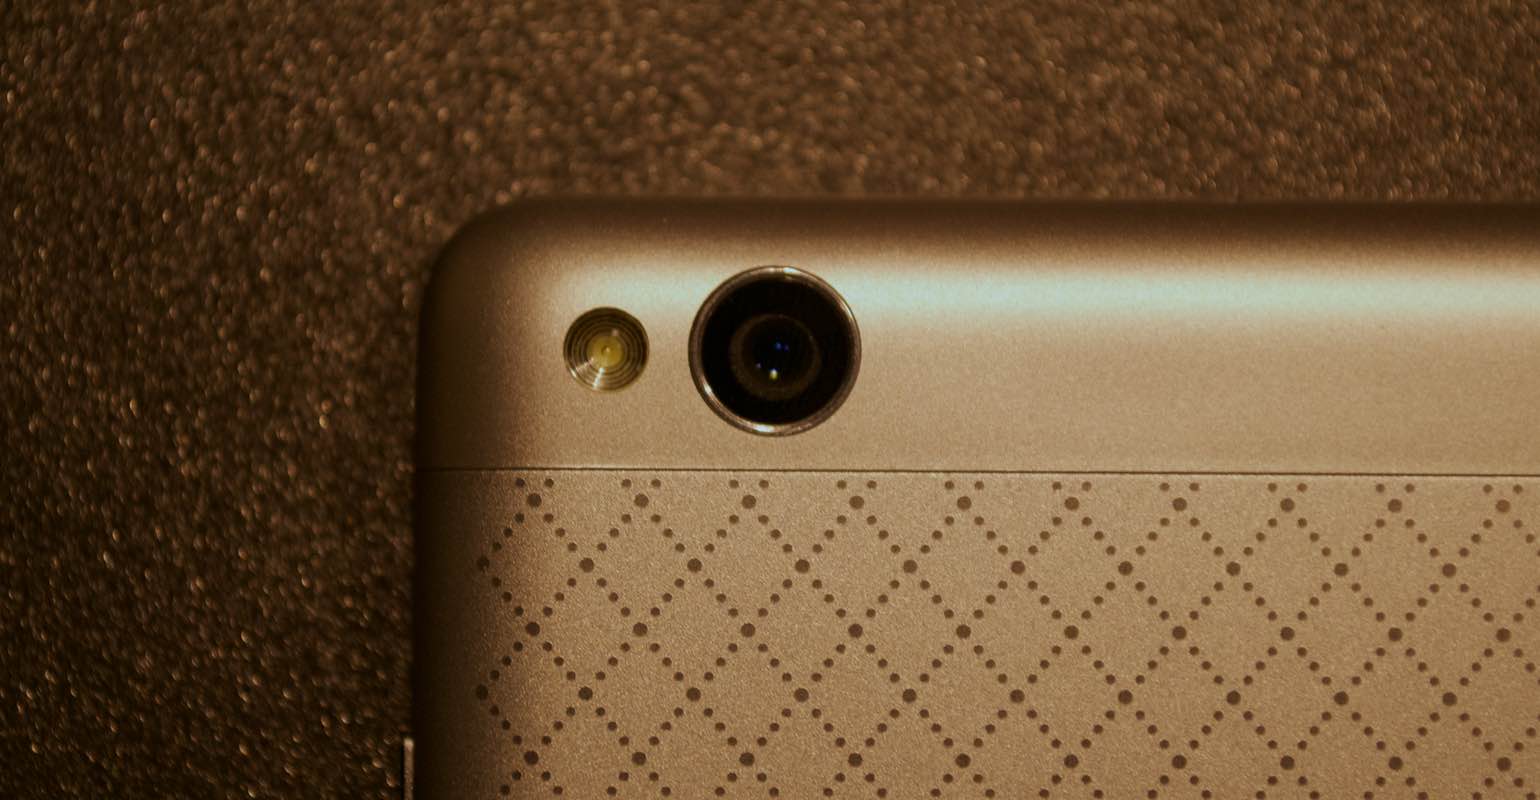 Xiaomi Redmi 3 camera